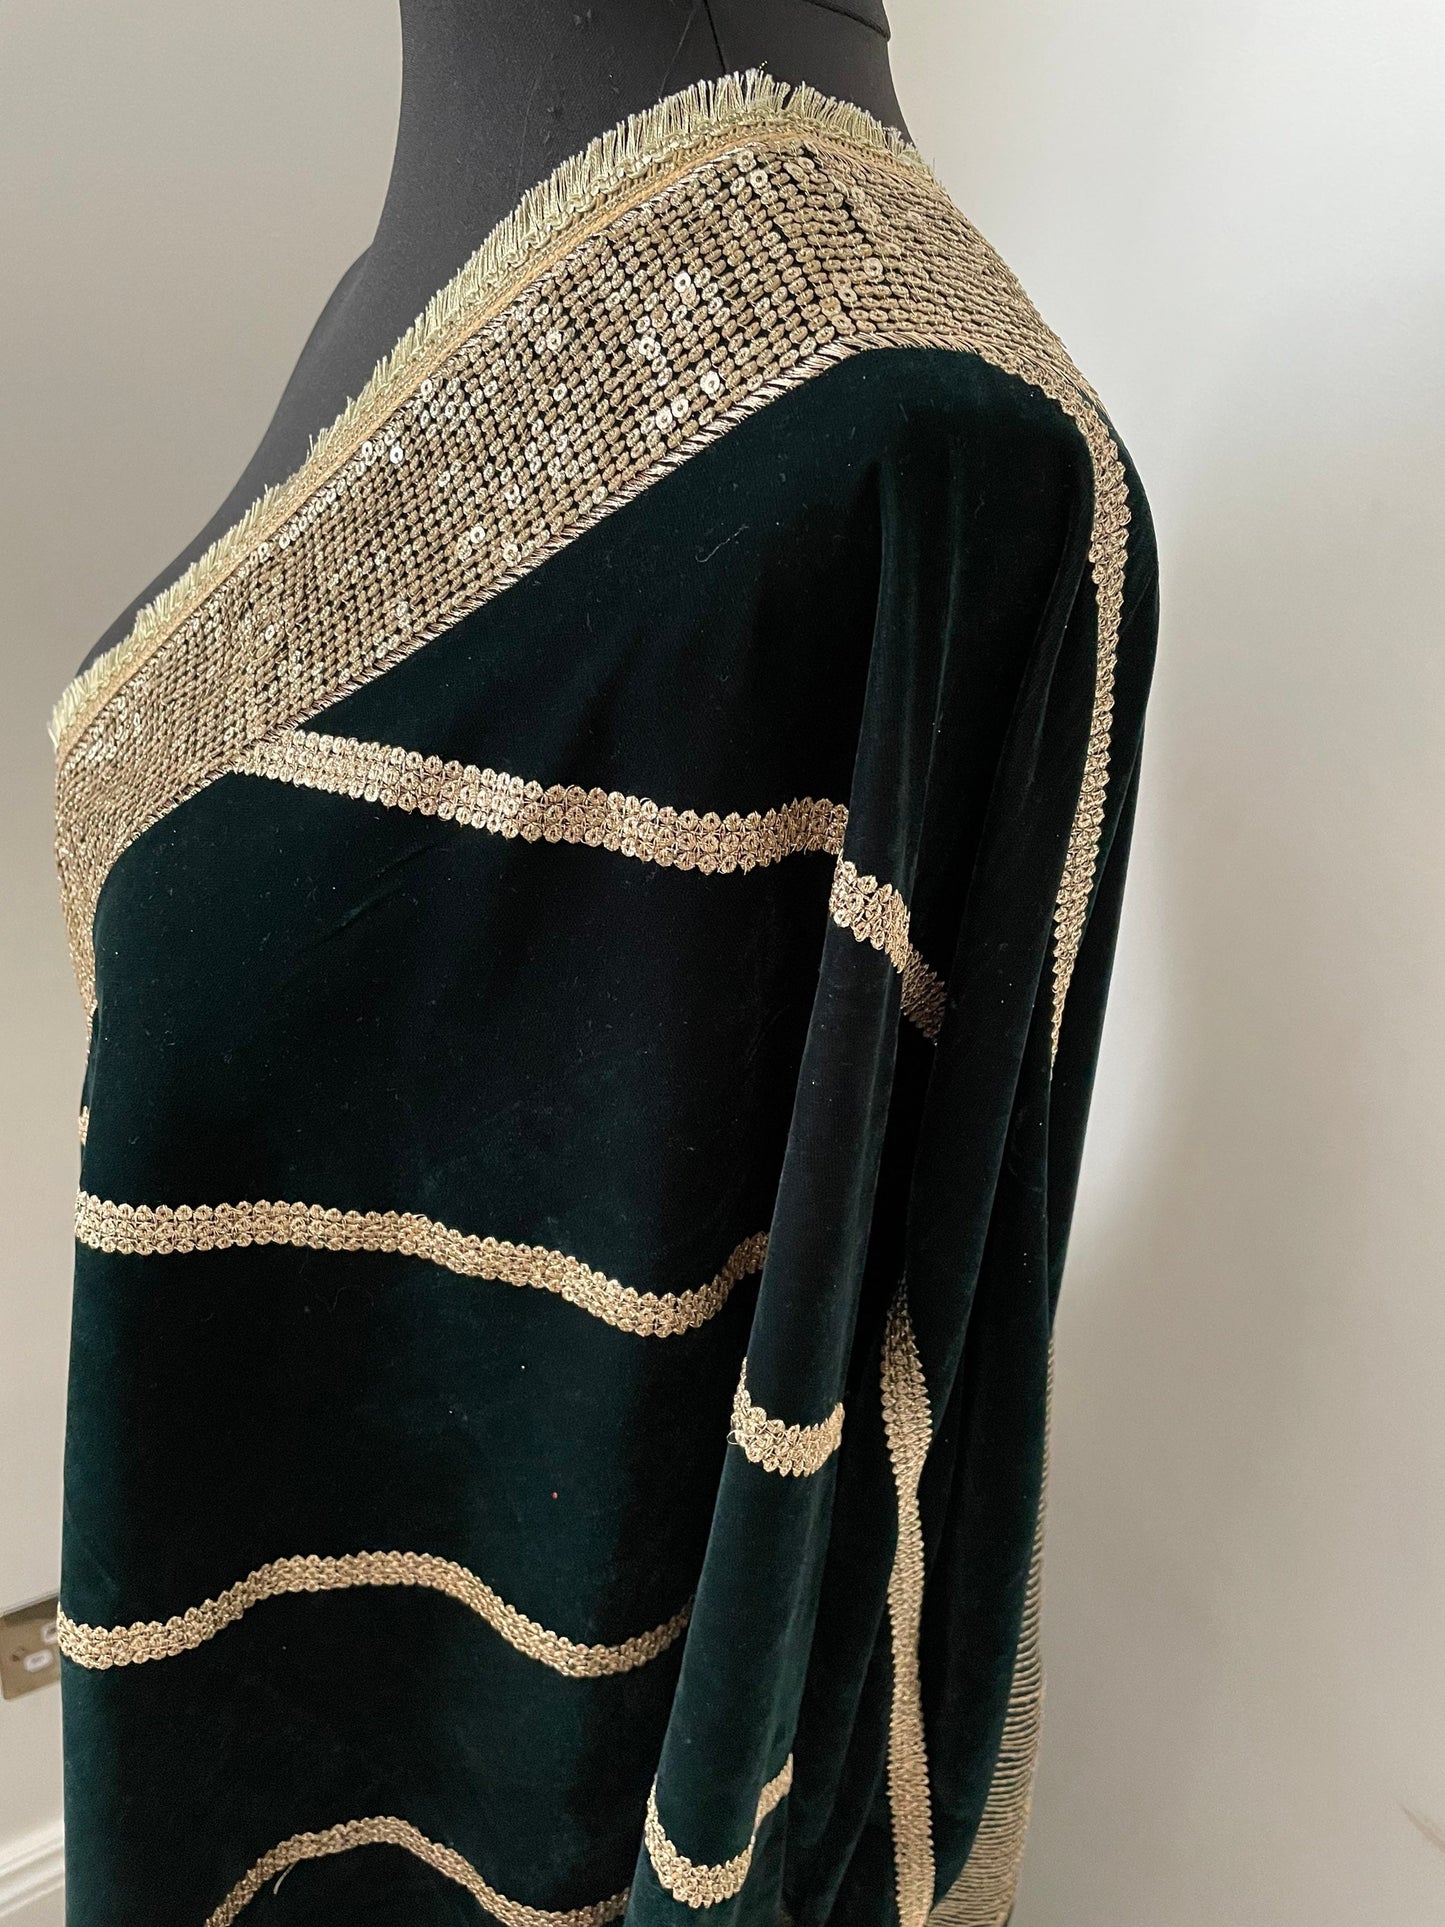 Velvet Sequin Embroidered Stole Duppattas for Winters Weddings Lohri dressing update Salwar Kameez Lehengas Kurtis for the Festive Season